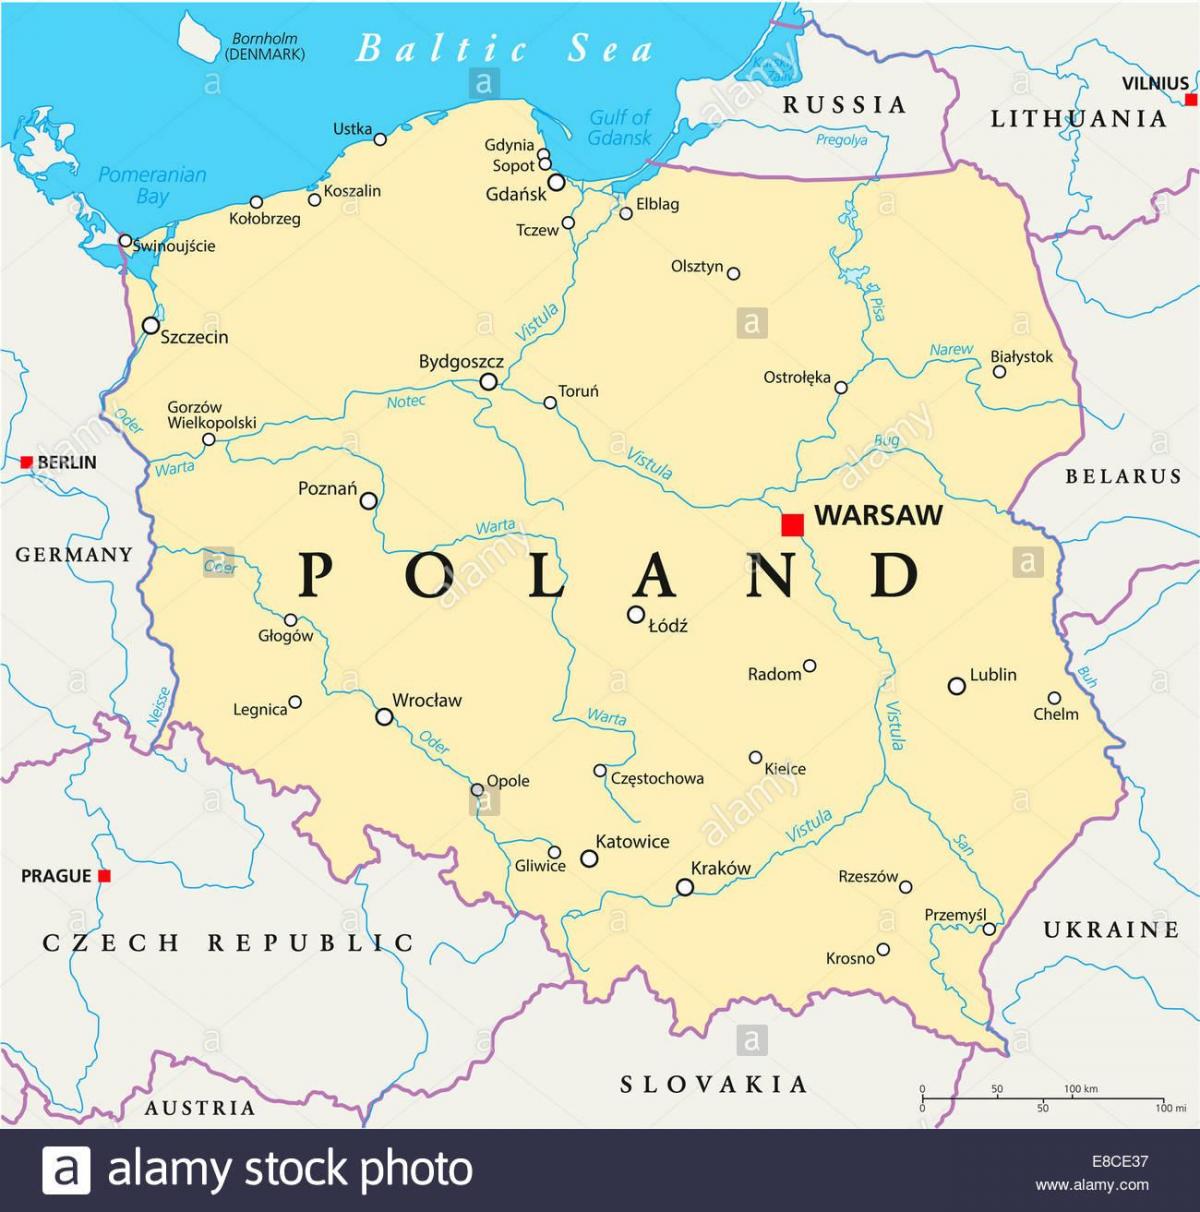 Warsaw vị trí trên bản đồ thế giới